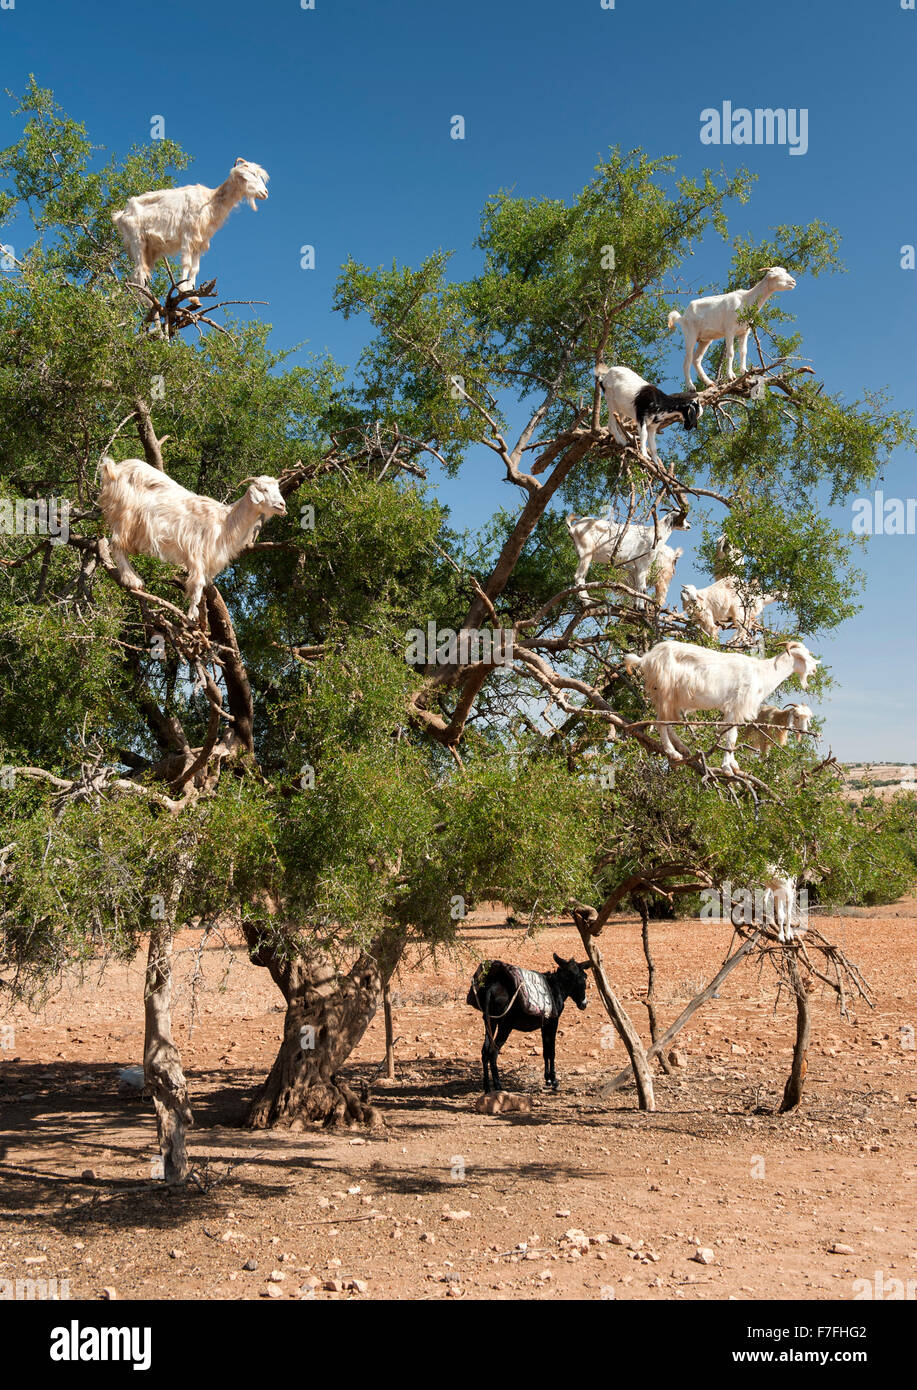 Les chèvres dans un arbre sur la route de Marrakech à Essaouira au Maroc. Banque D'Images